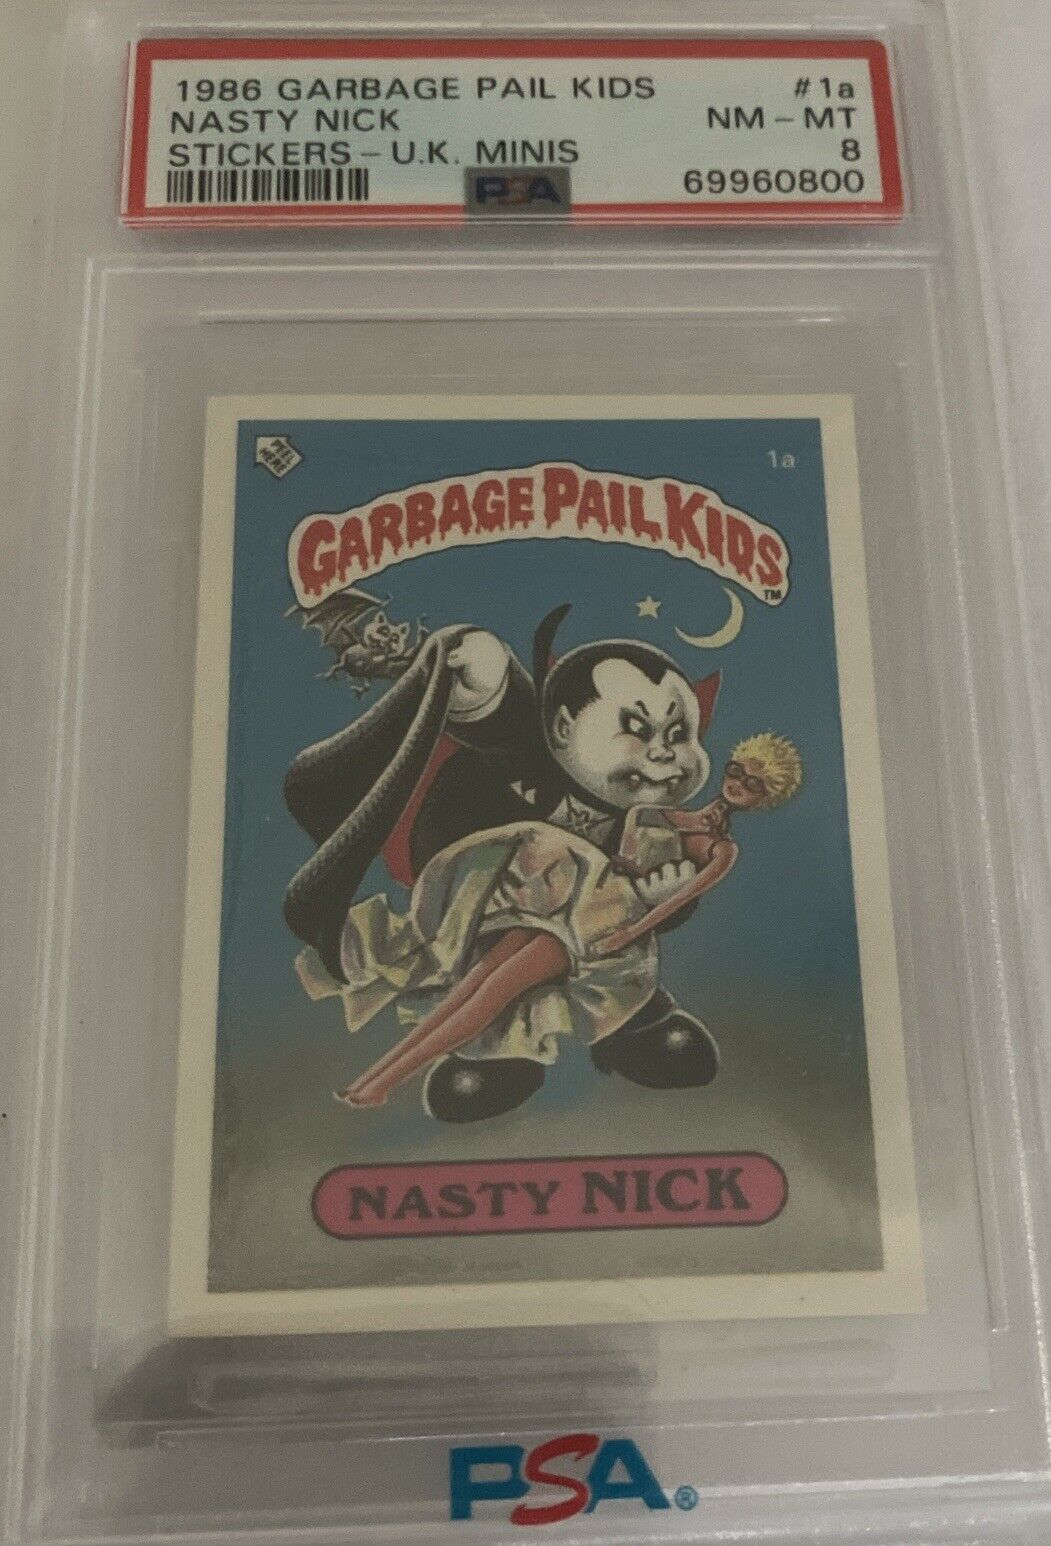 1986 Topps U.K. Garbage Pail Kids #1a Nasty Nick UK gpk minis PSA 8 Graded Card